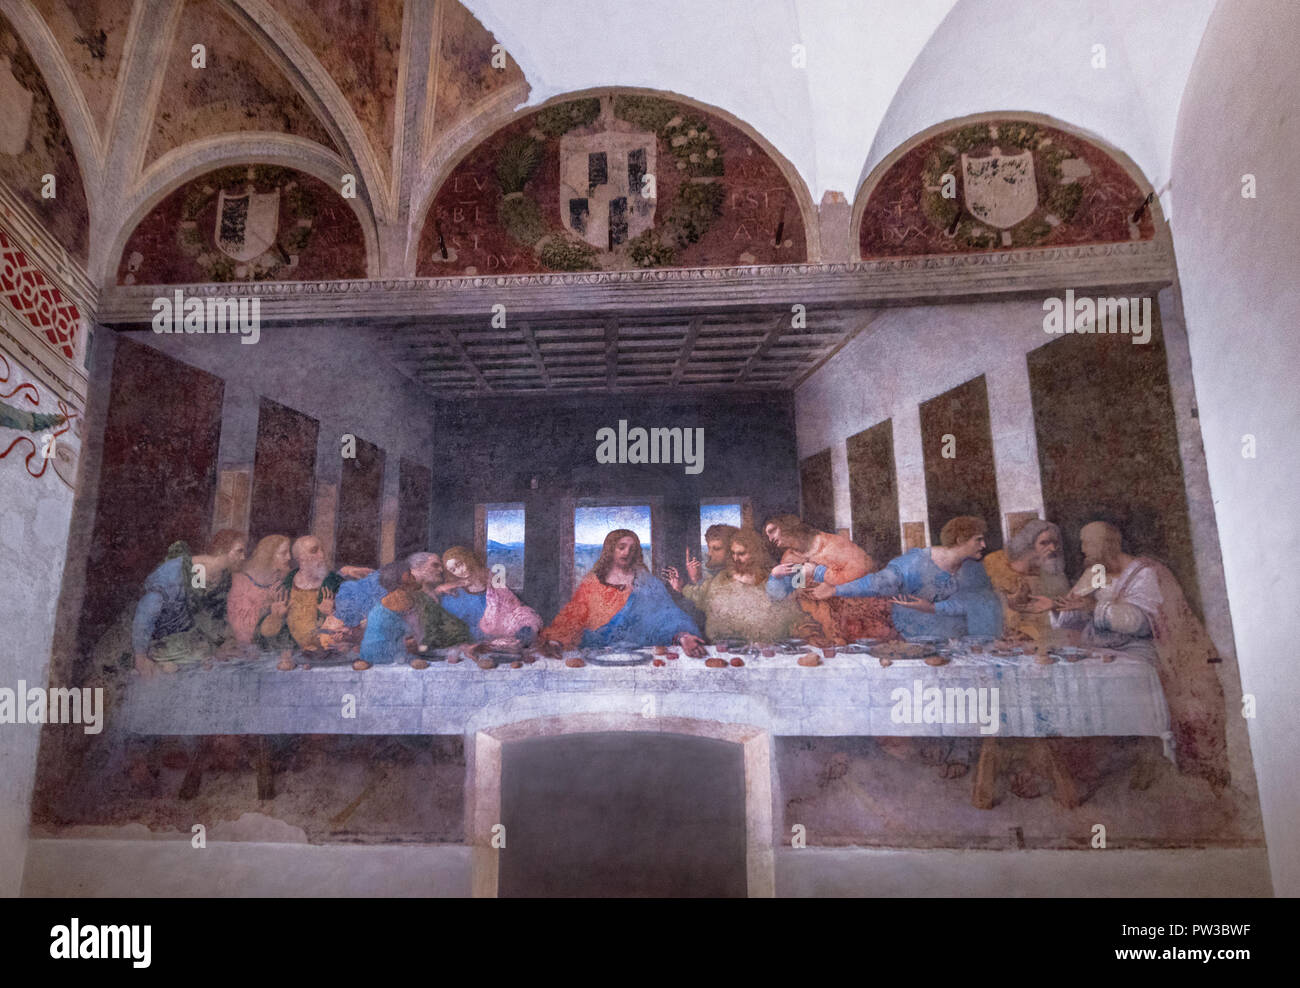 The famous Last Supper by Leonardo da Vinci in Santa Maria delle Grazie church in Milan, Italy Stock Photo